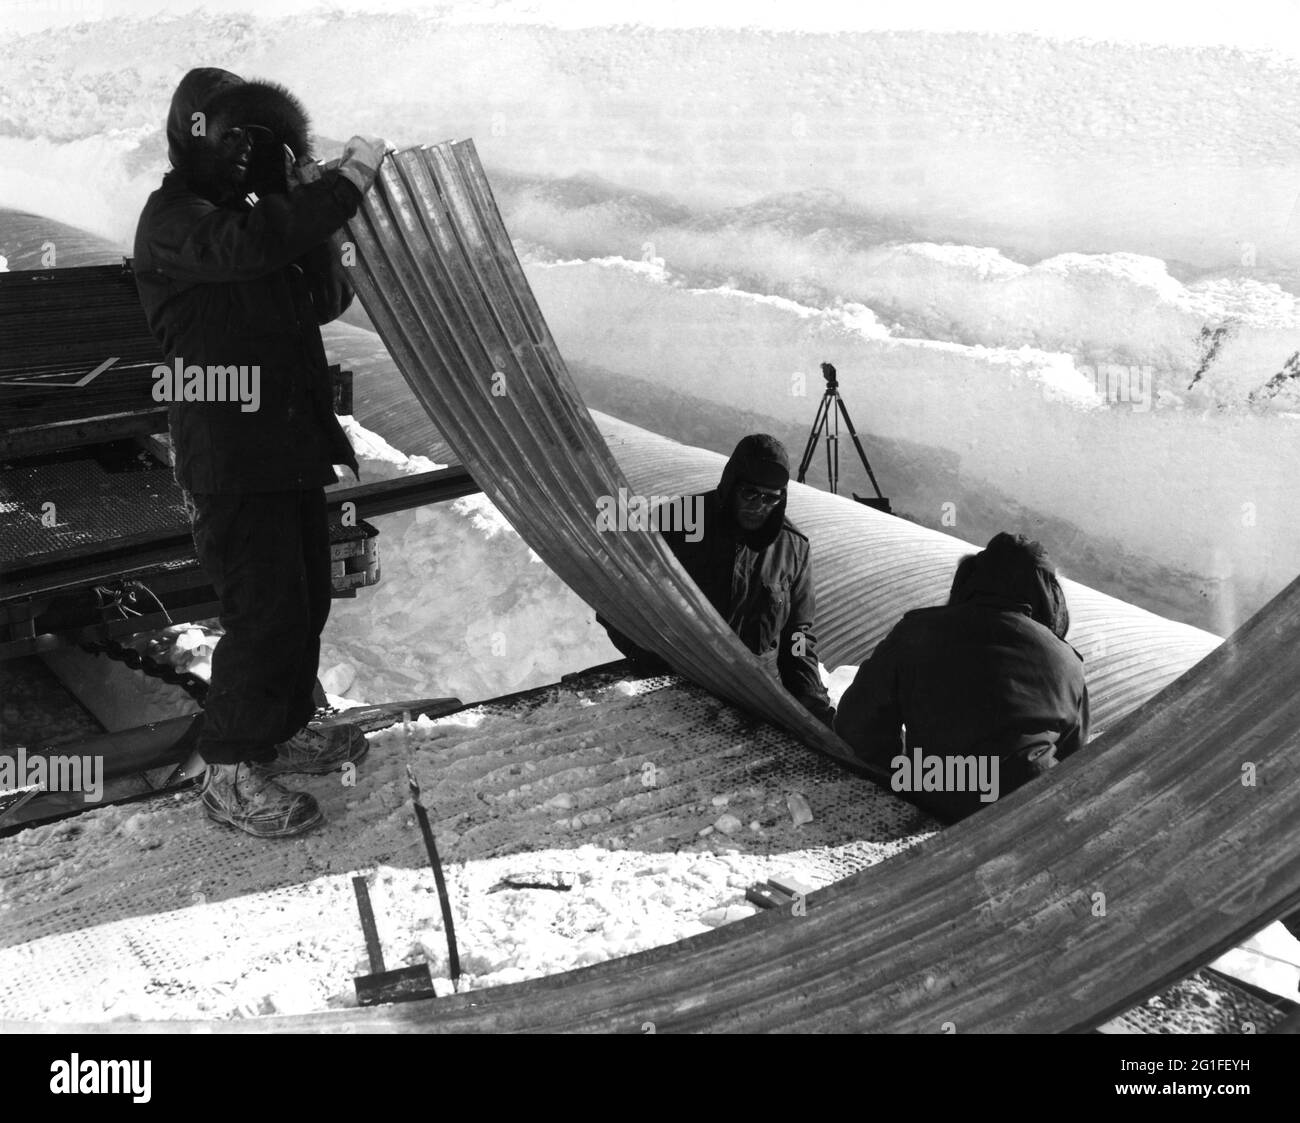 Antártida, hombres con chapa de hierro corrugada curva, estación de investigación de la marina de EE.UU., New Byrd Station, DERECHOS ADICIONALES-LIQUIDACIÓN-INFO-NO DISPONIBLE Foto de stock